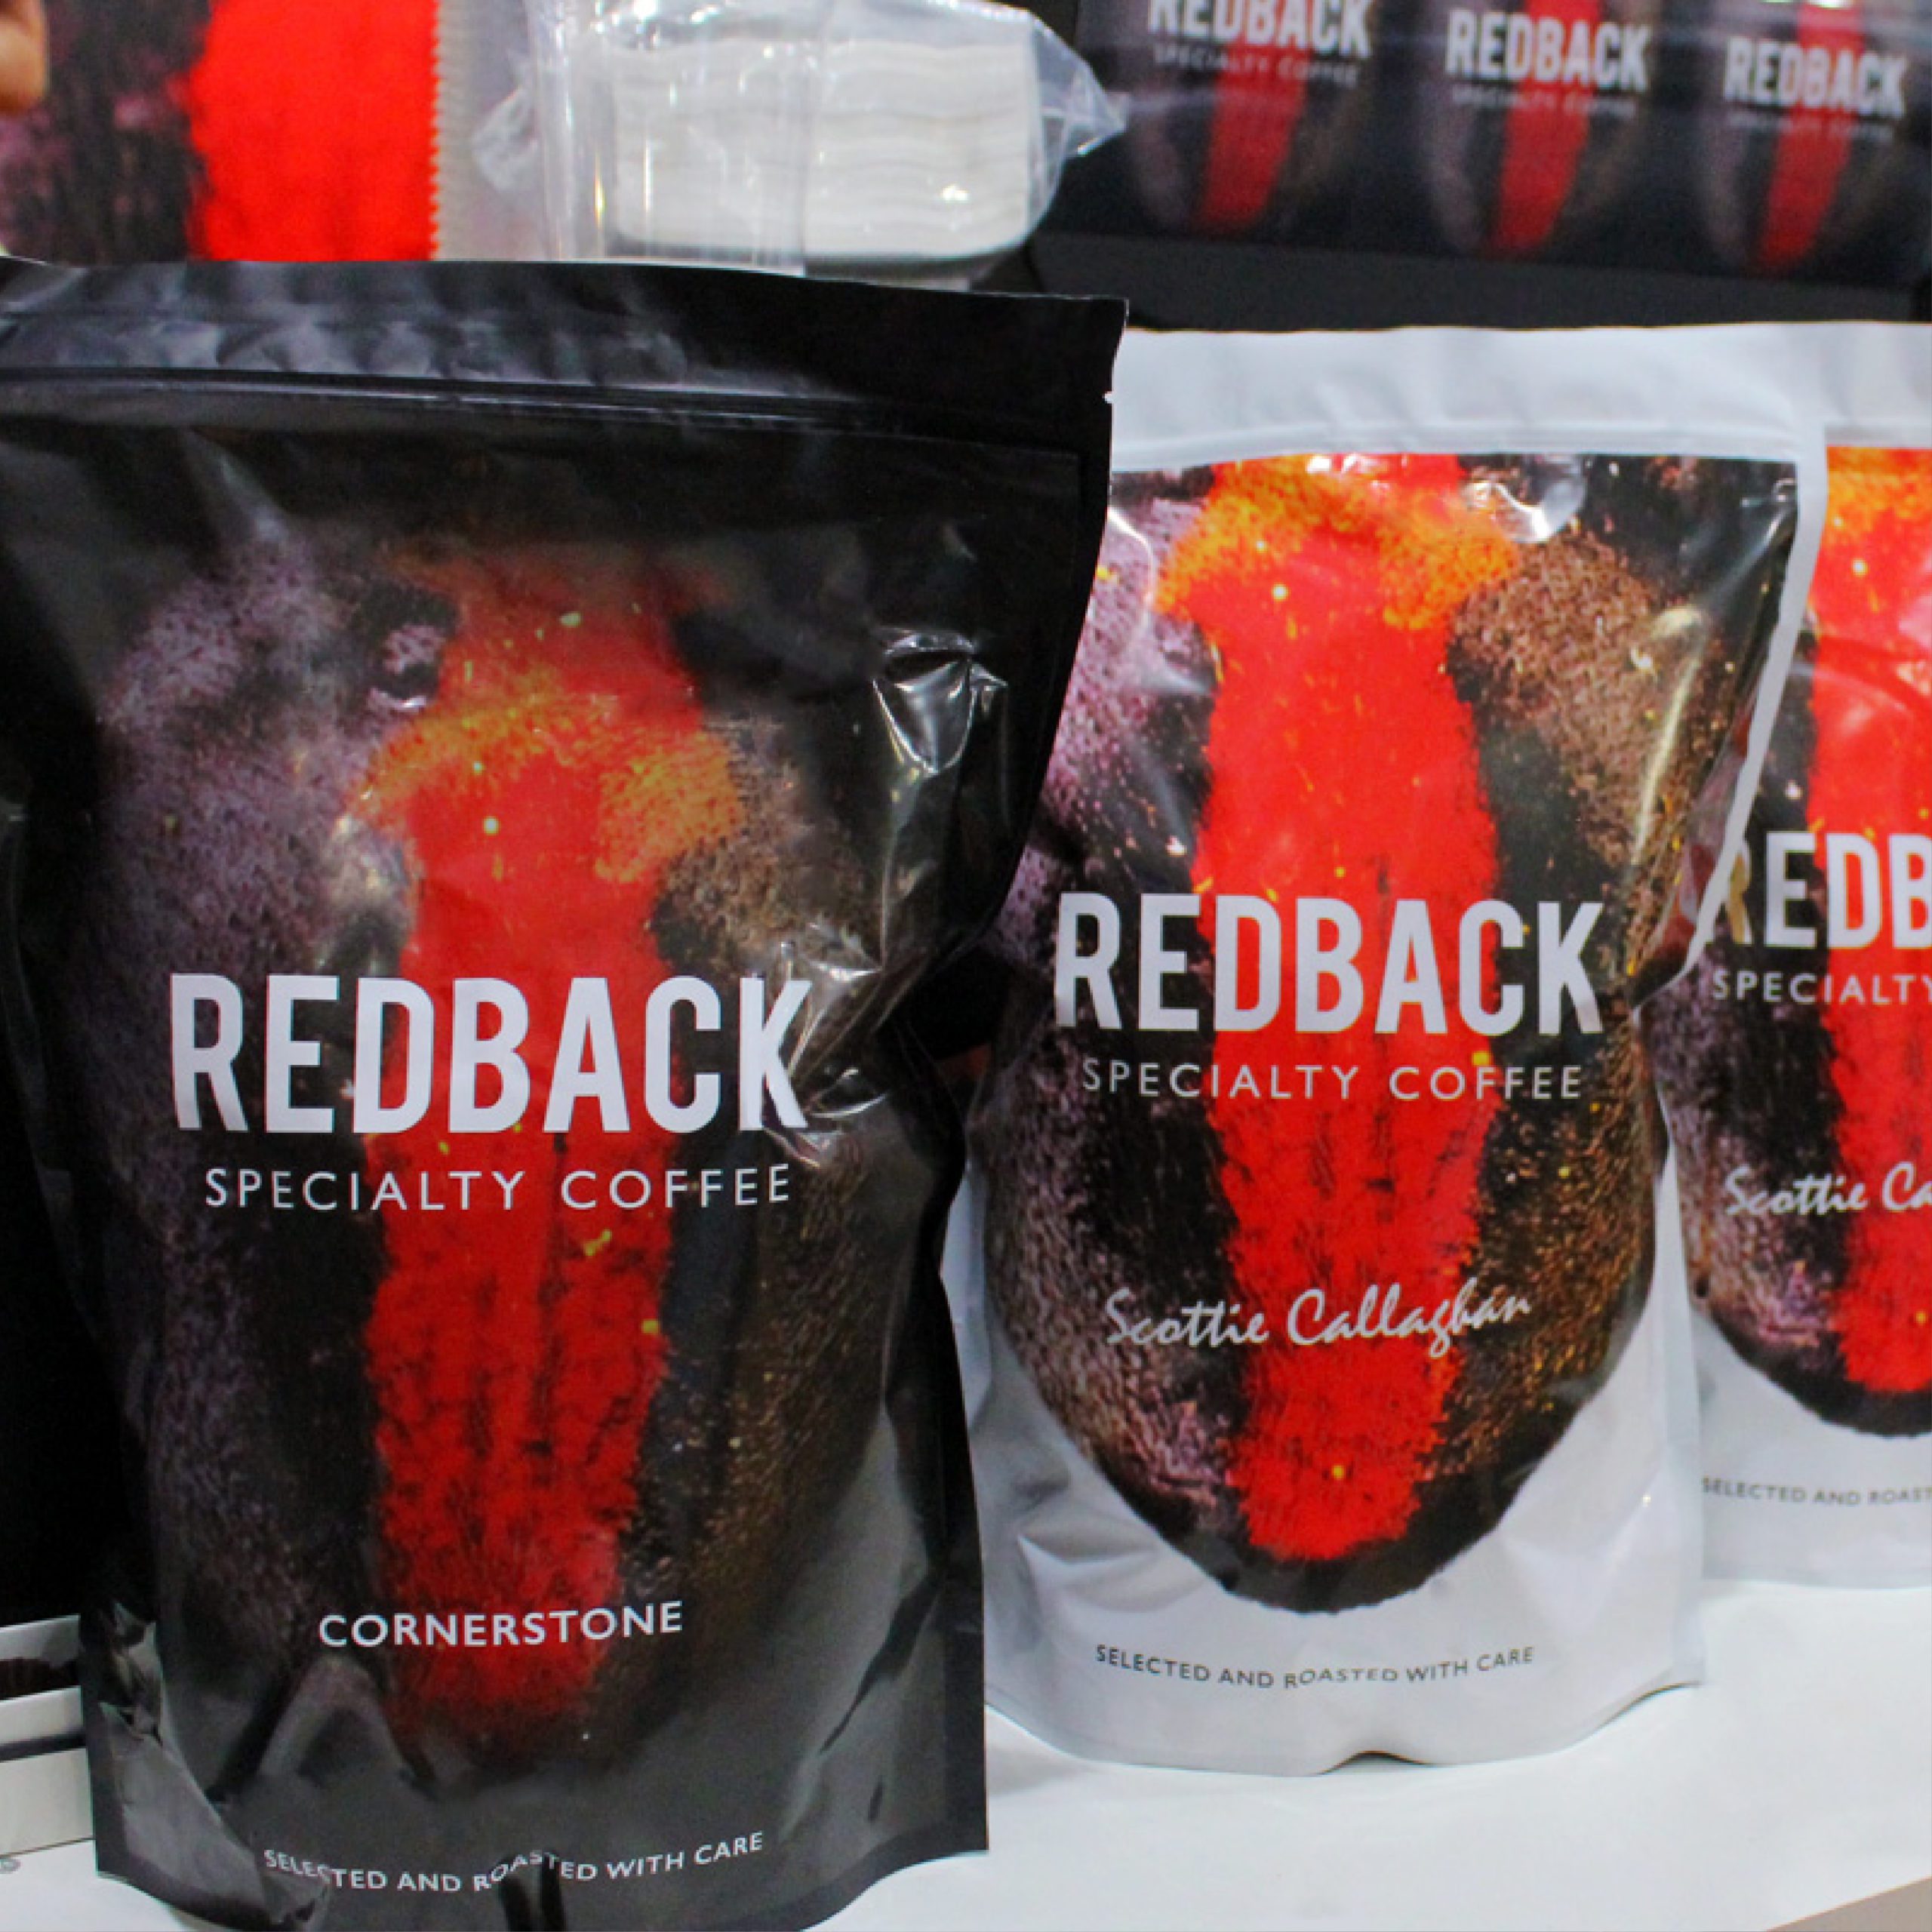 Redback Coffee coffee bean packaging design